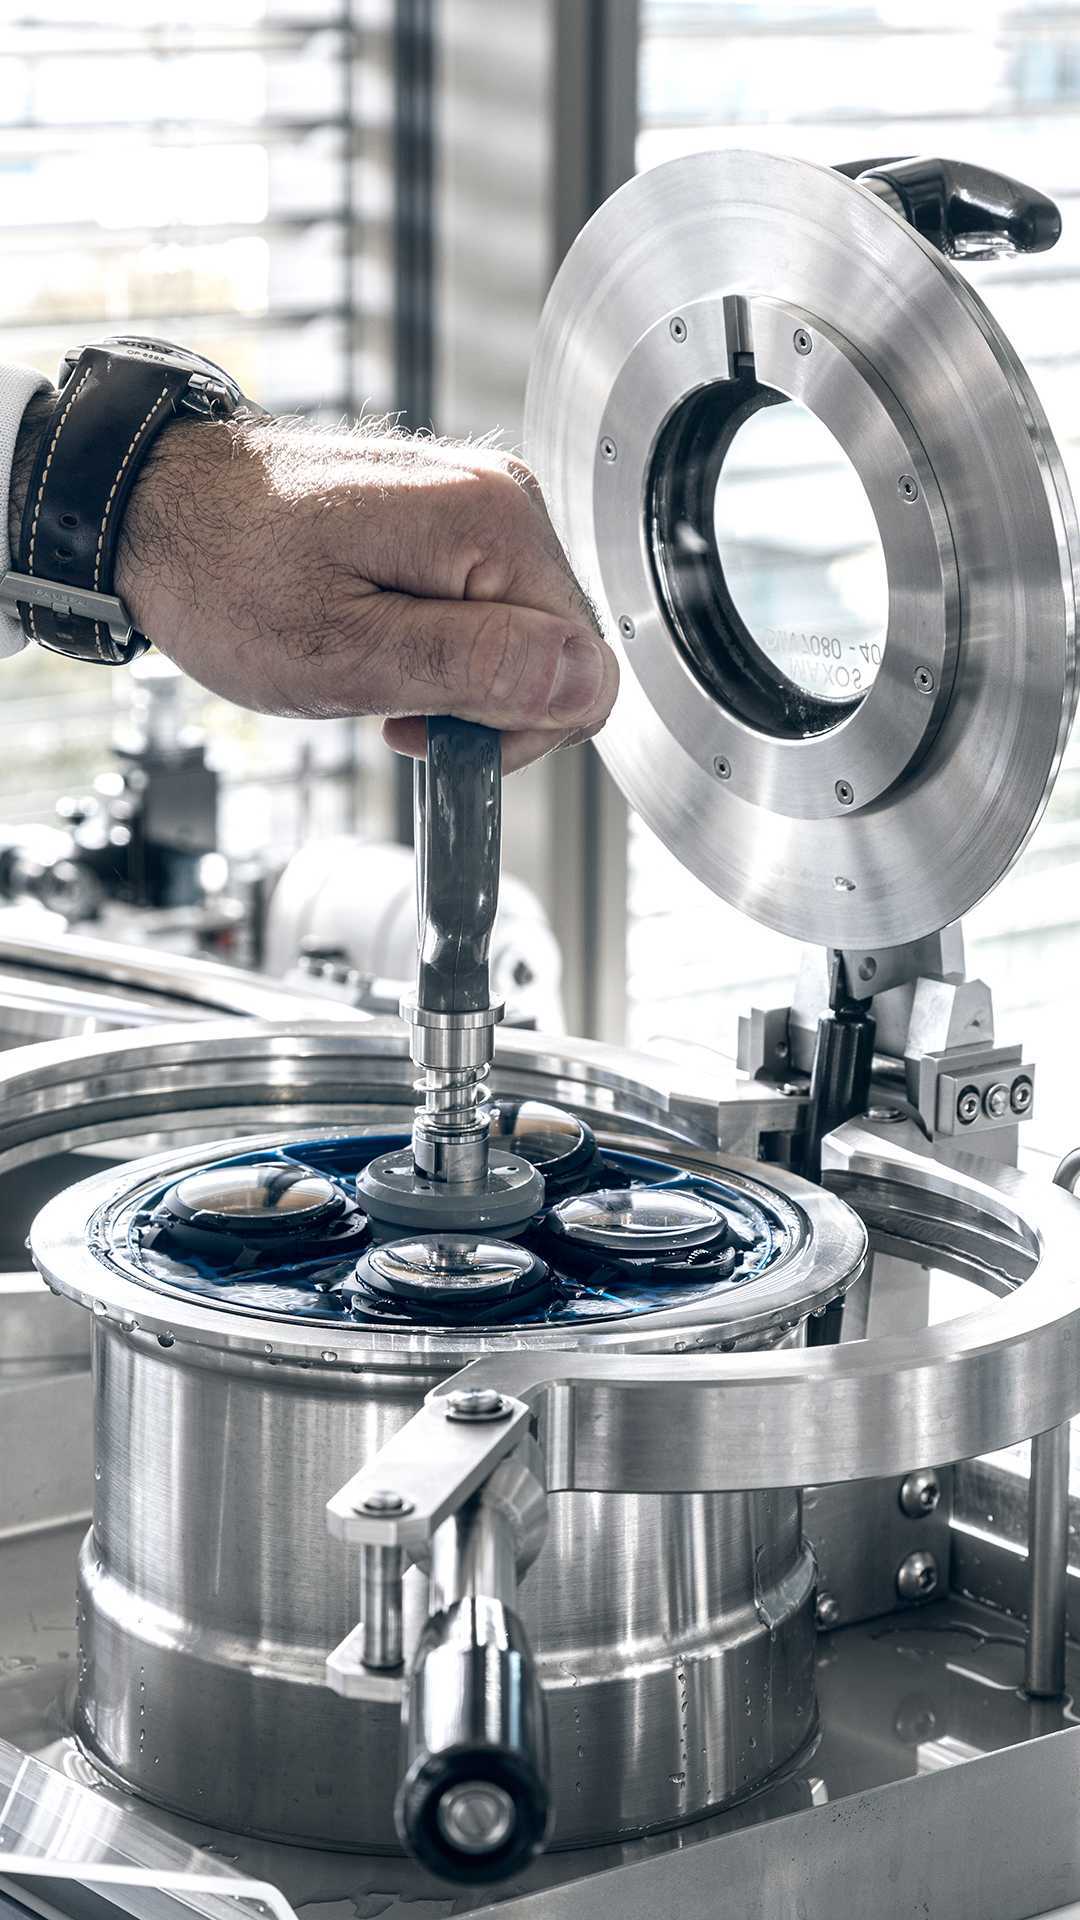 Panerai watch manufacture pressure test